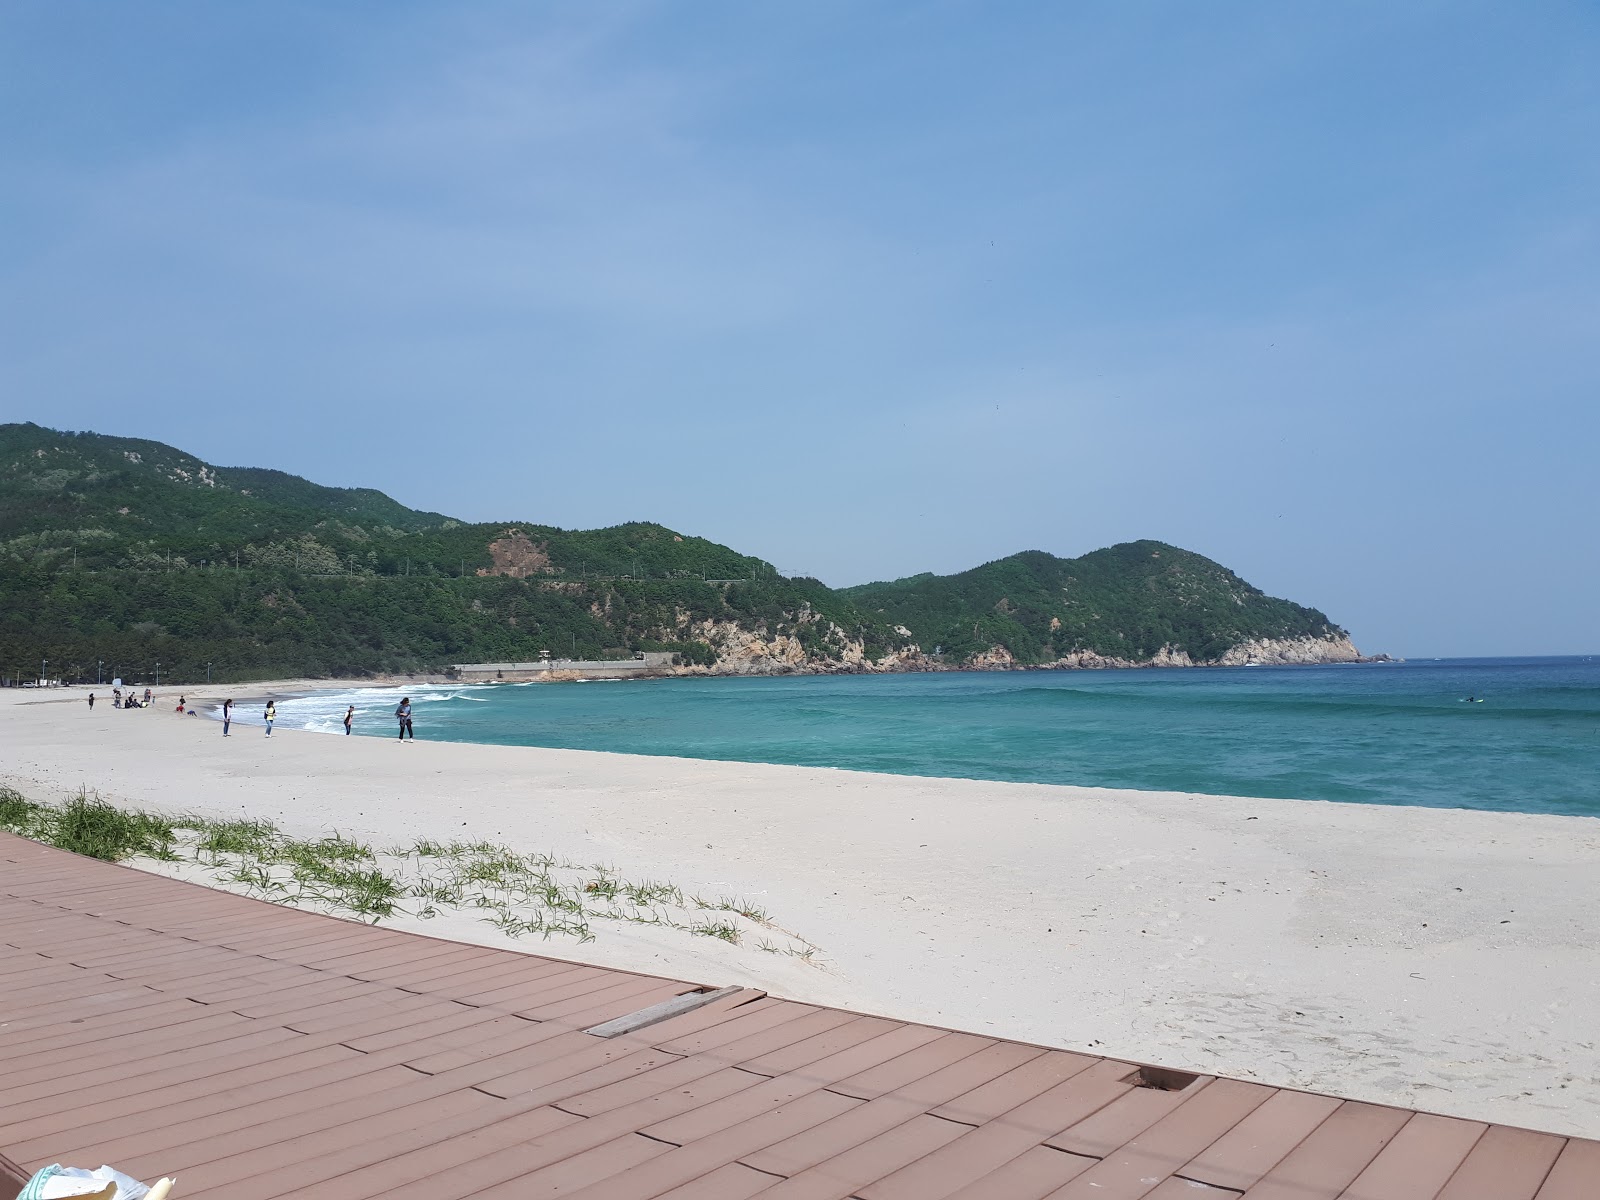 Fotografie cu Yonghwa Beach cu o suprafață de apa pură turcoaz